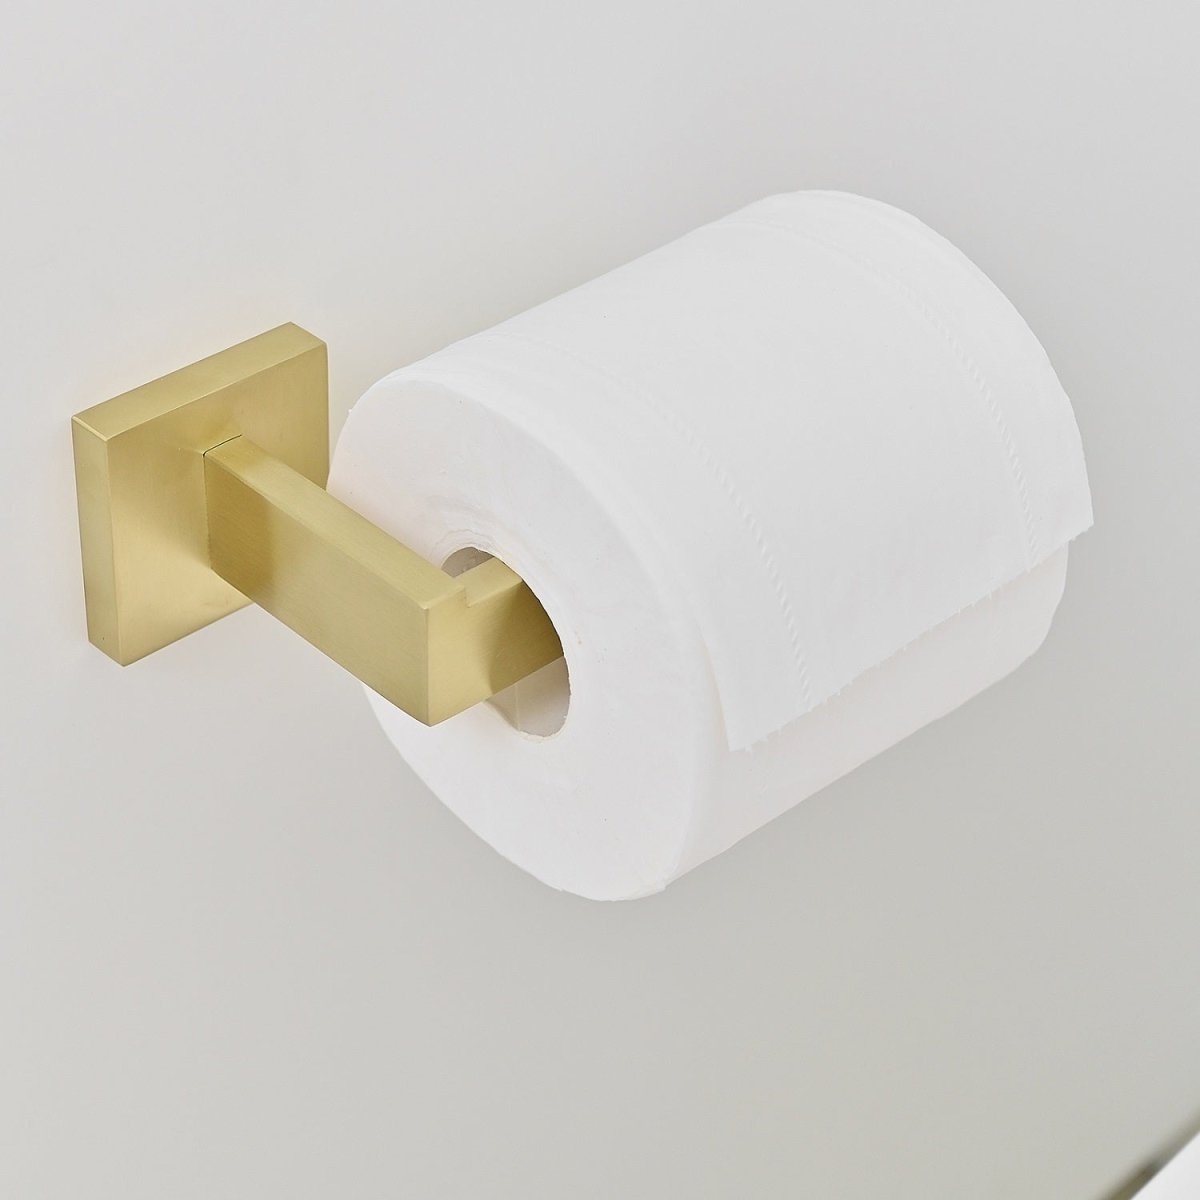 5 PCS Towel Bar Towel Hook Toilet Paper Holder Set Gold - buyfaucet.com